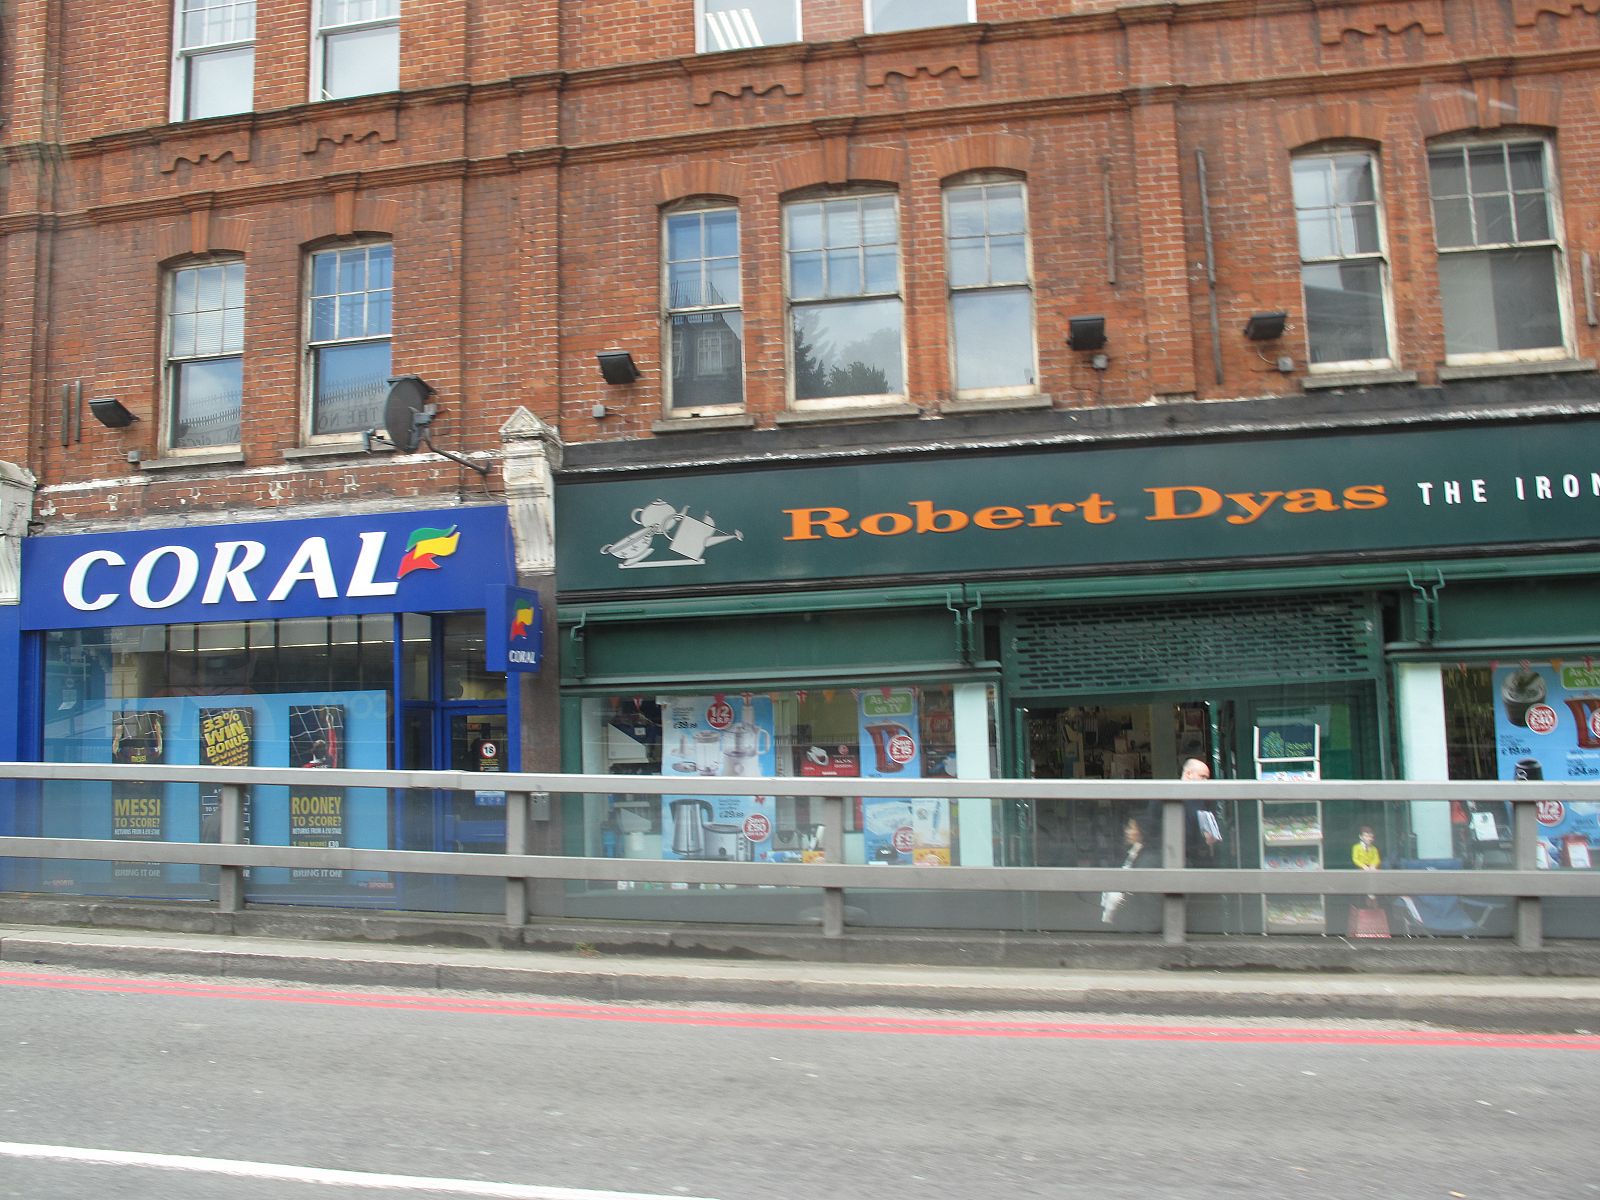 Paseando por Londres se encuentran numerosos locales para apostar.